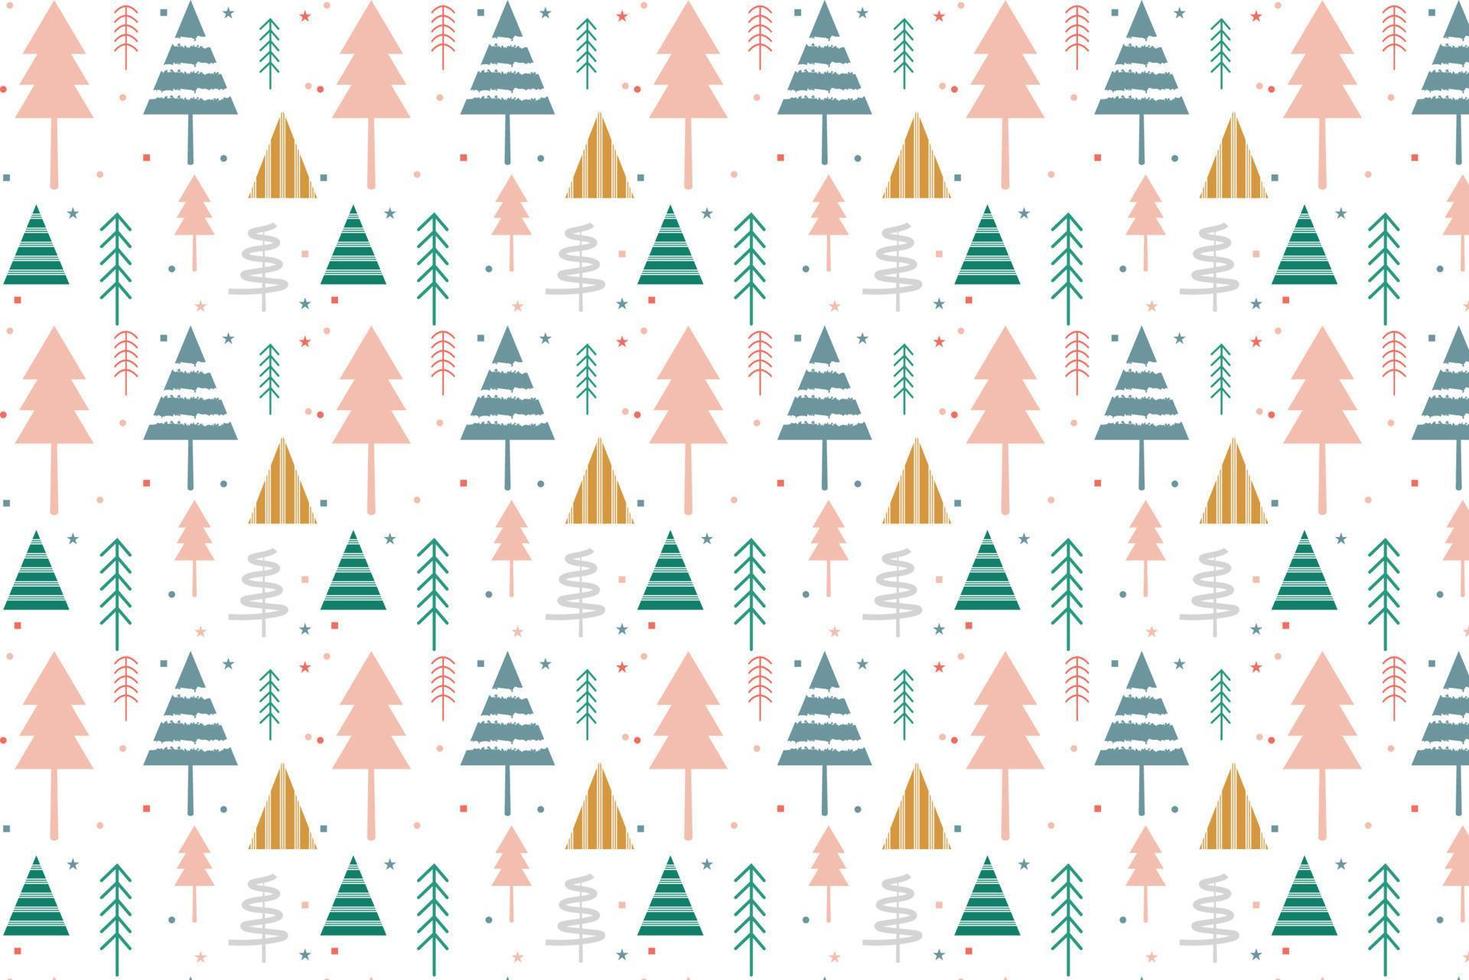 einfaches weihnachtsnahtloses muster mit geometrischen motiven. Schneeflocken und Kreise mit verschiedenen Ornamenten. magisches Naturphantasie-Schneefallbeschaffenheits-Dekorationsdesign vektor